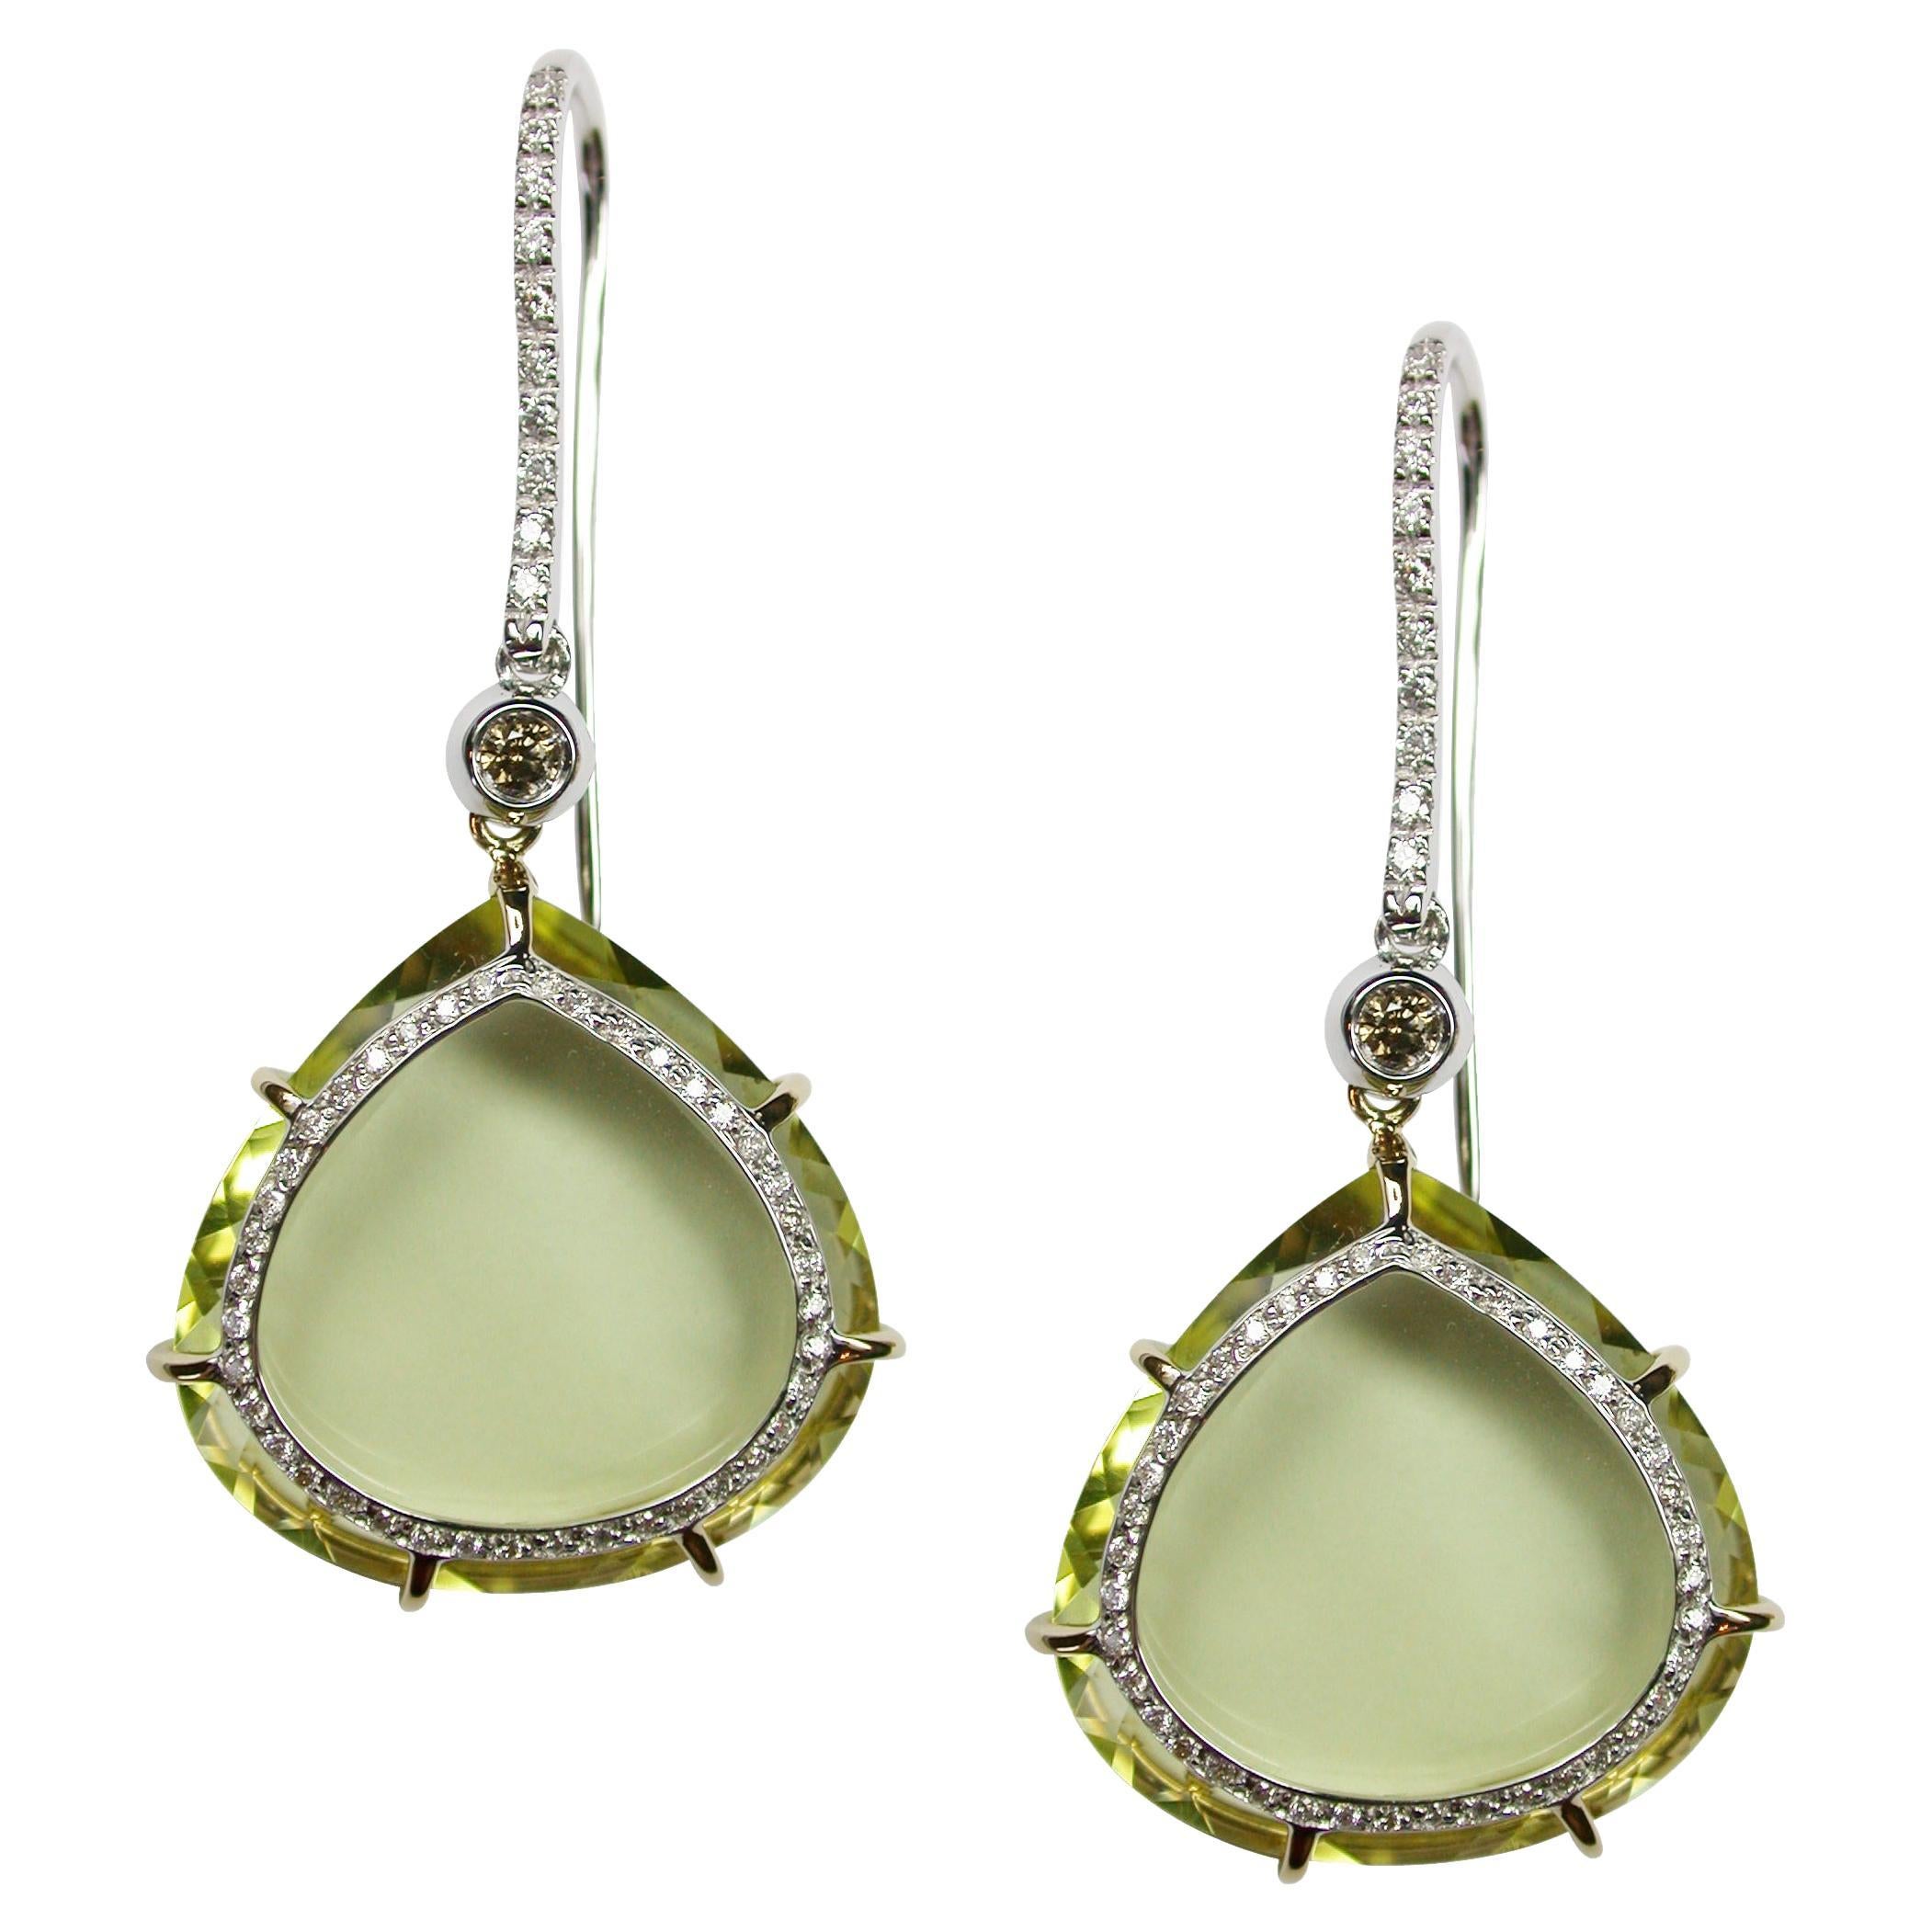 18kt  white gold earrings with diamonds & lemon quartz drops